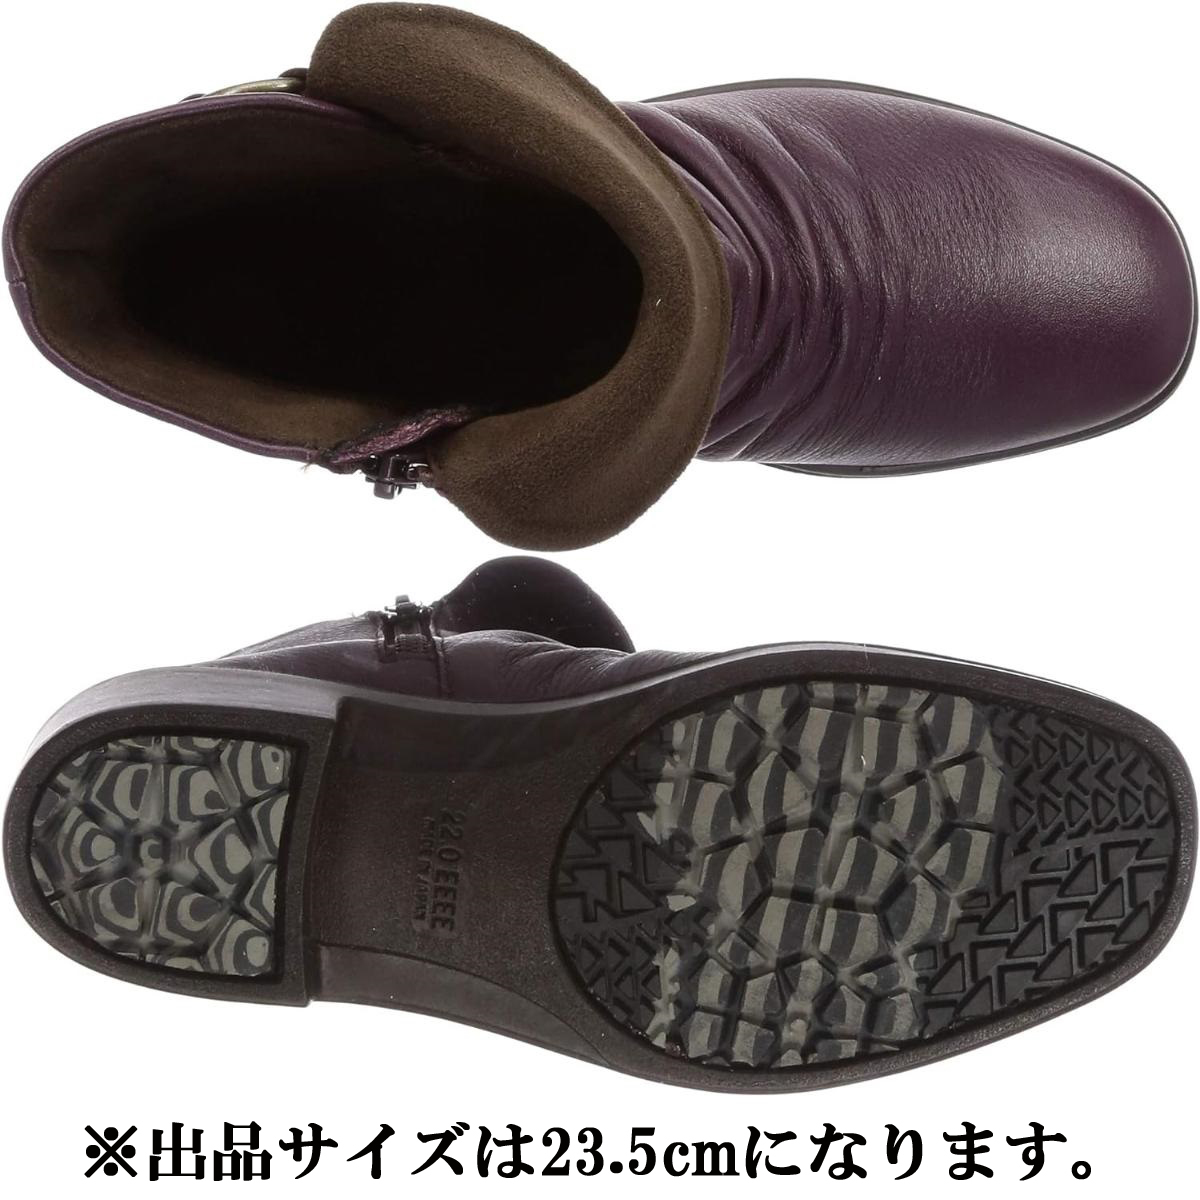 SP7563NSR лиловый 23.5cm moon Star spo rus женская обувь обувь 4E ботинки месяц звезда MOON STAR. скользить подошва ударная абсорбция сделано в Японии 